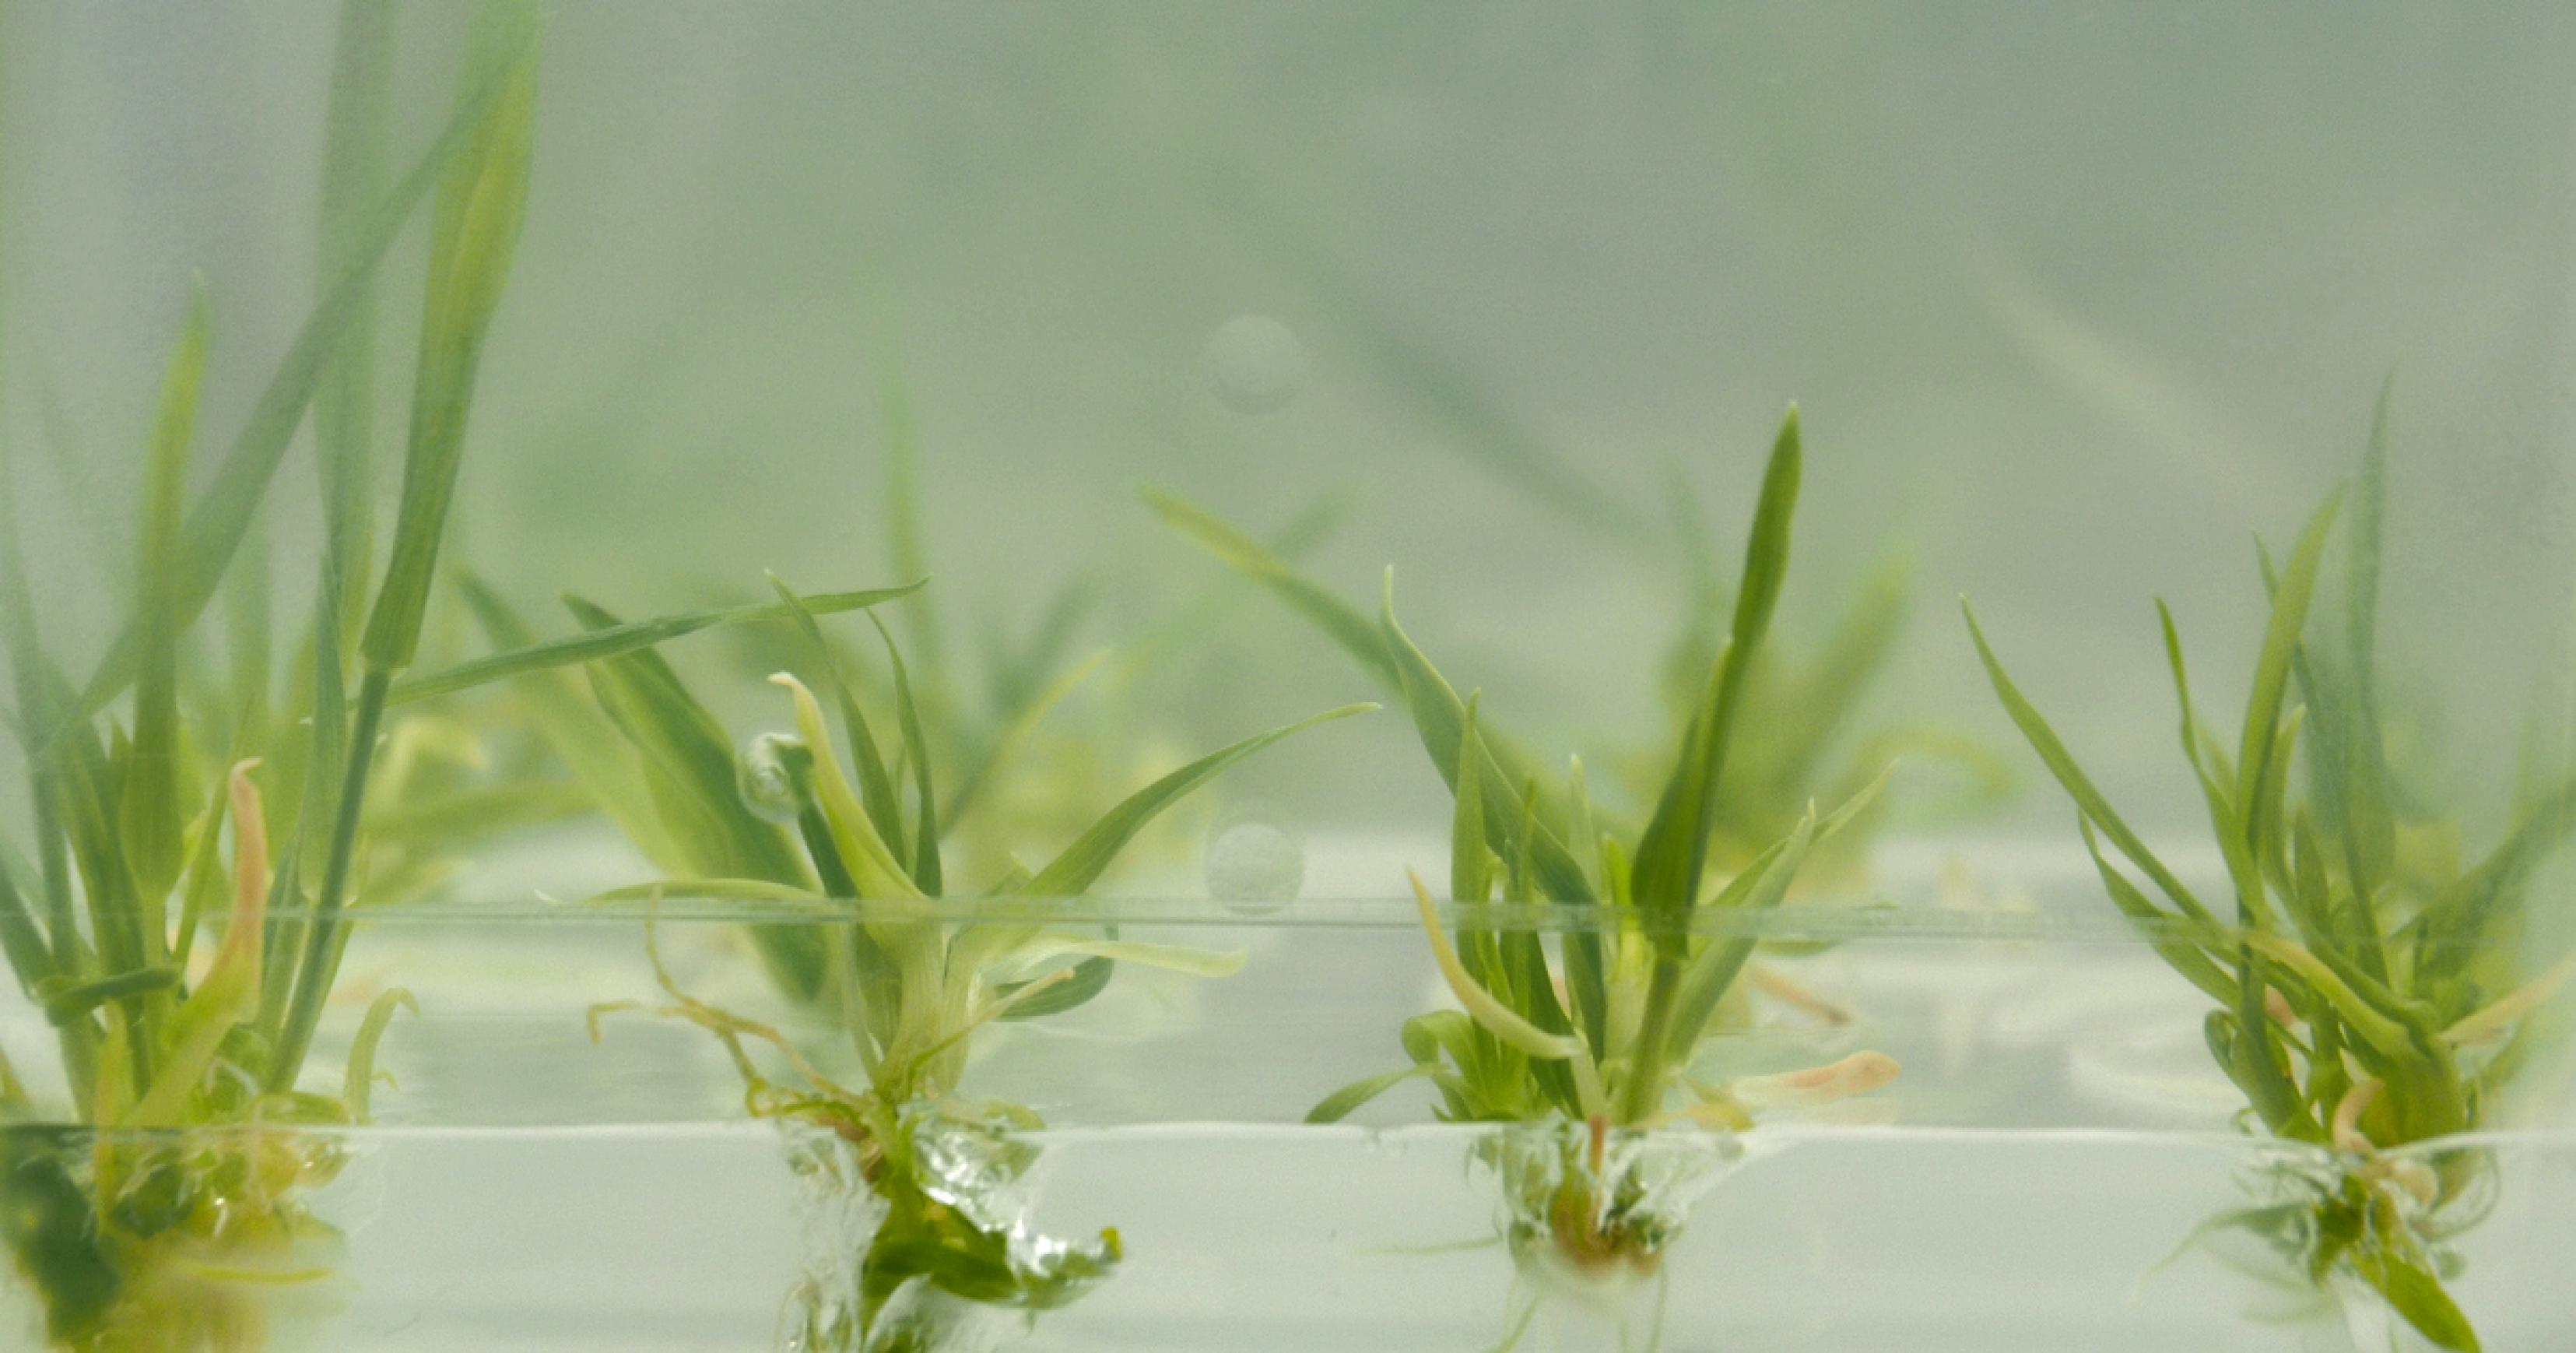 Kleine Gersten-Pflanzen stehen in einer trüben, festen Schicht aus Nährmedium in einem erhellten Kunststoffgefäß.